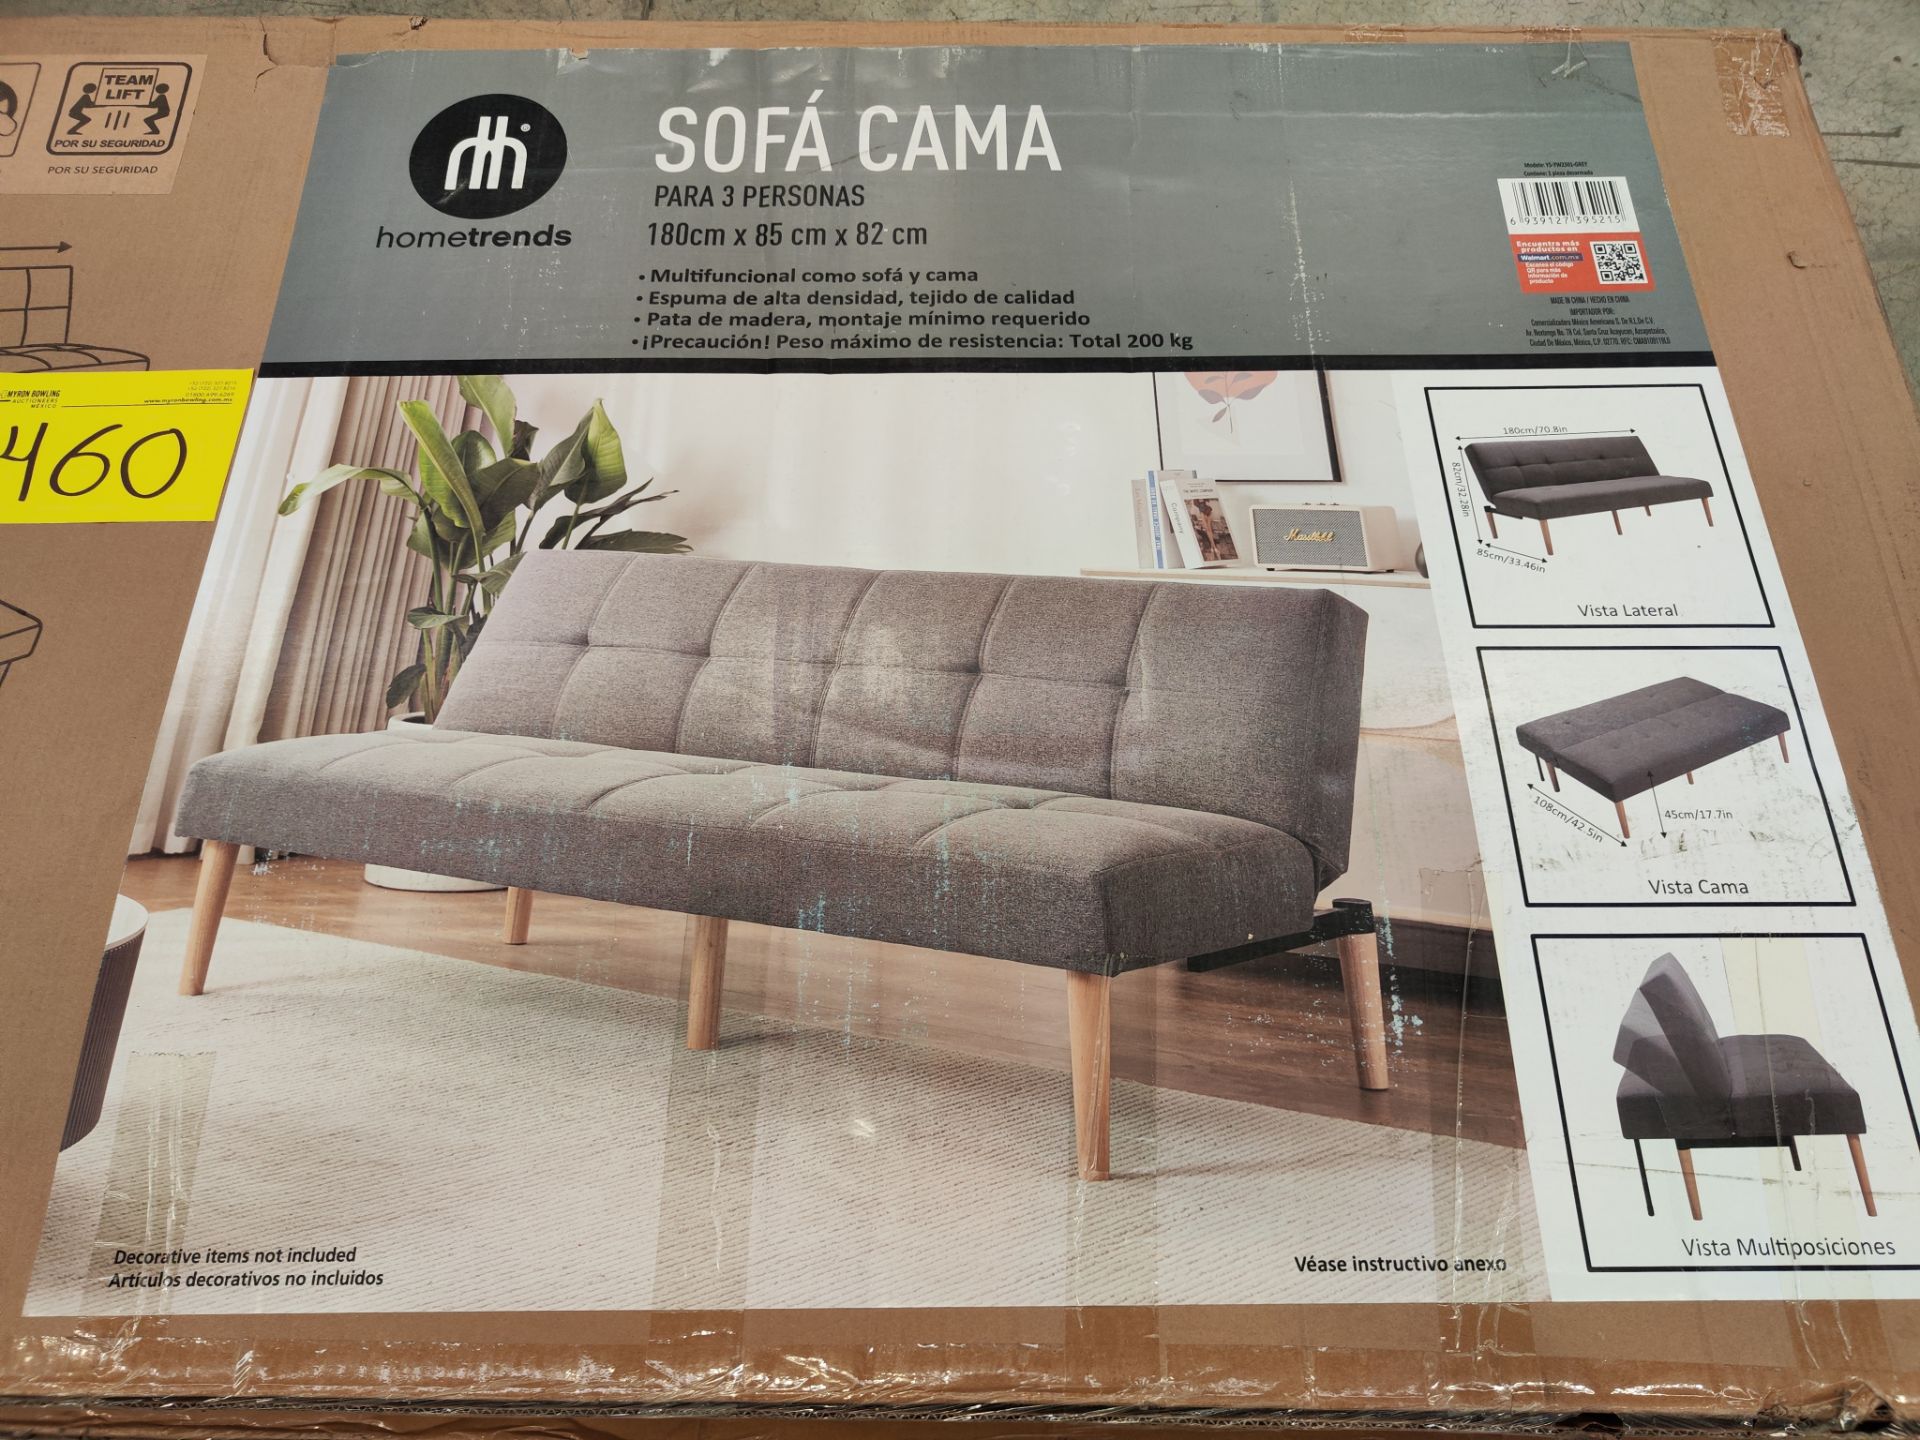 Lote de 2 sofá camas Marca HOME TRENDS (la descripción puede o no coincidir con el producto, favor - Image 6 of 8